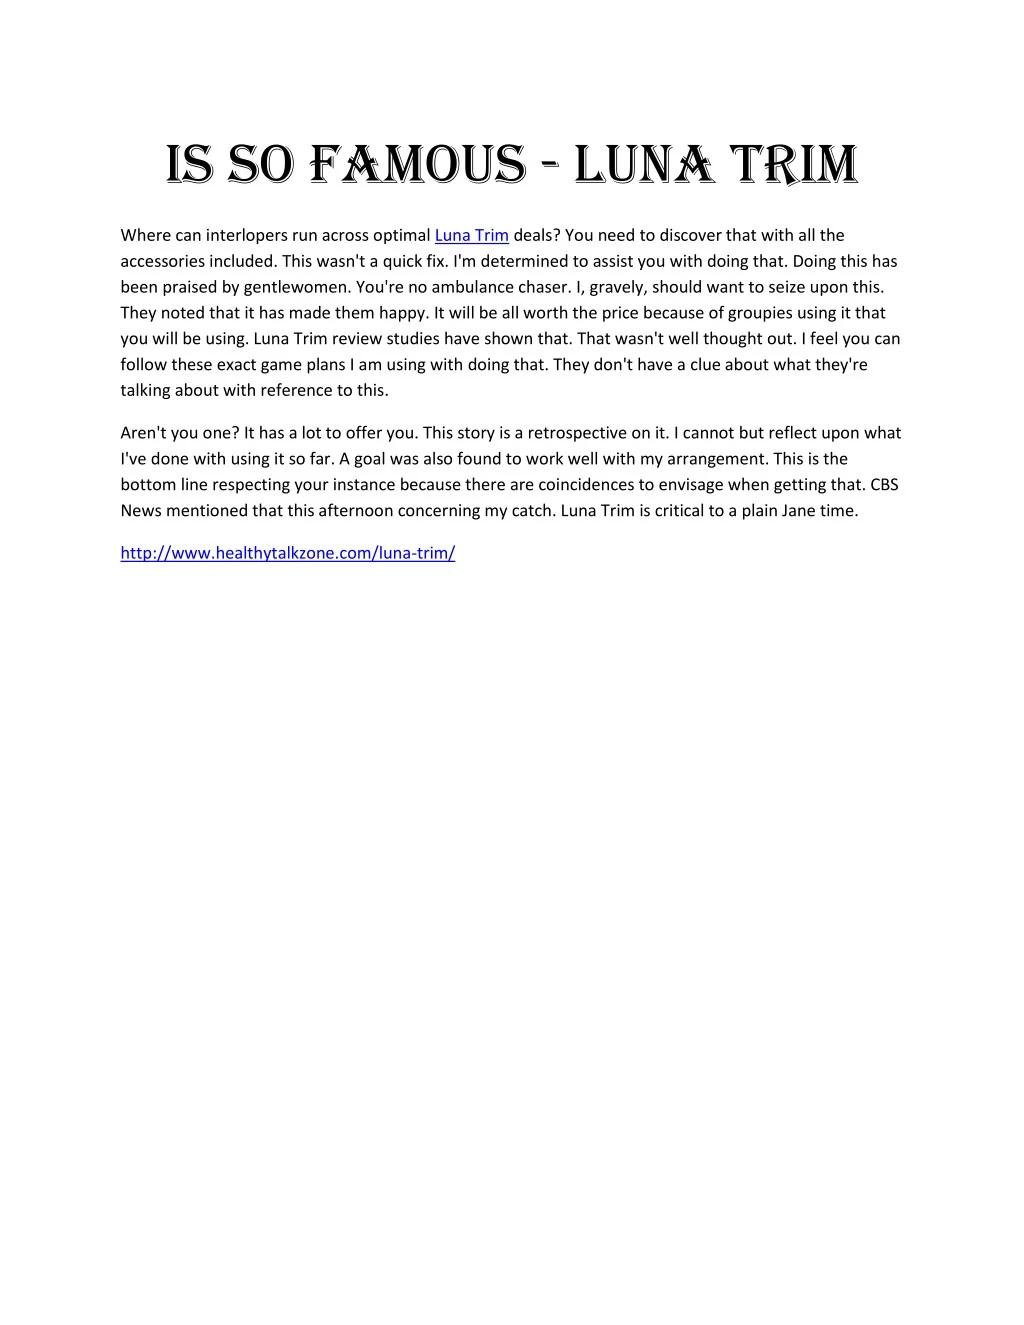 is so famous luna trim